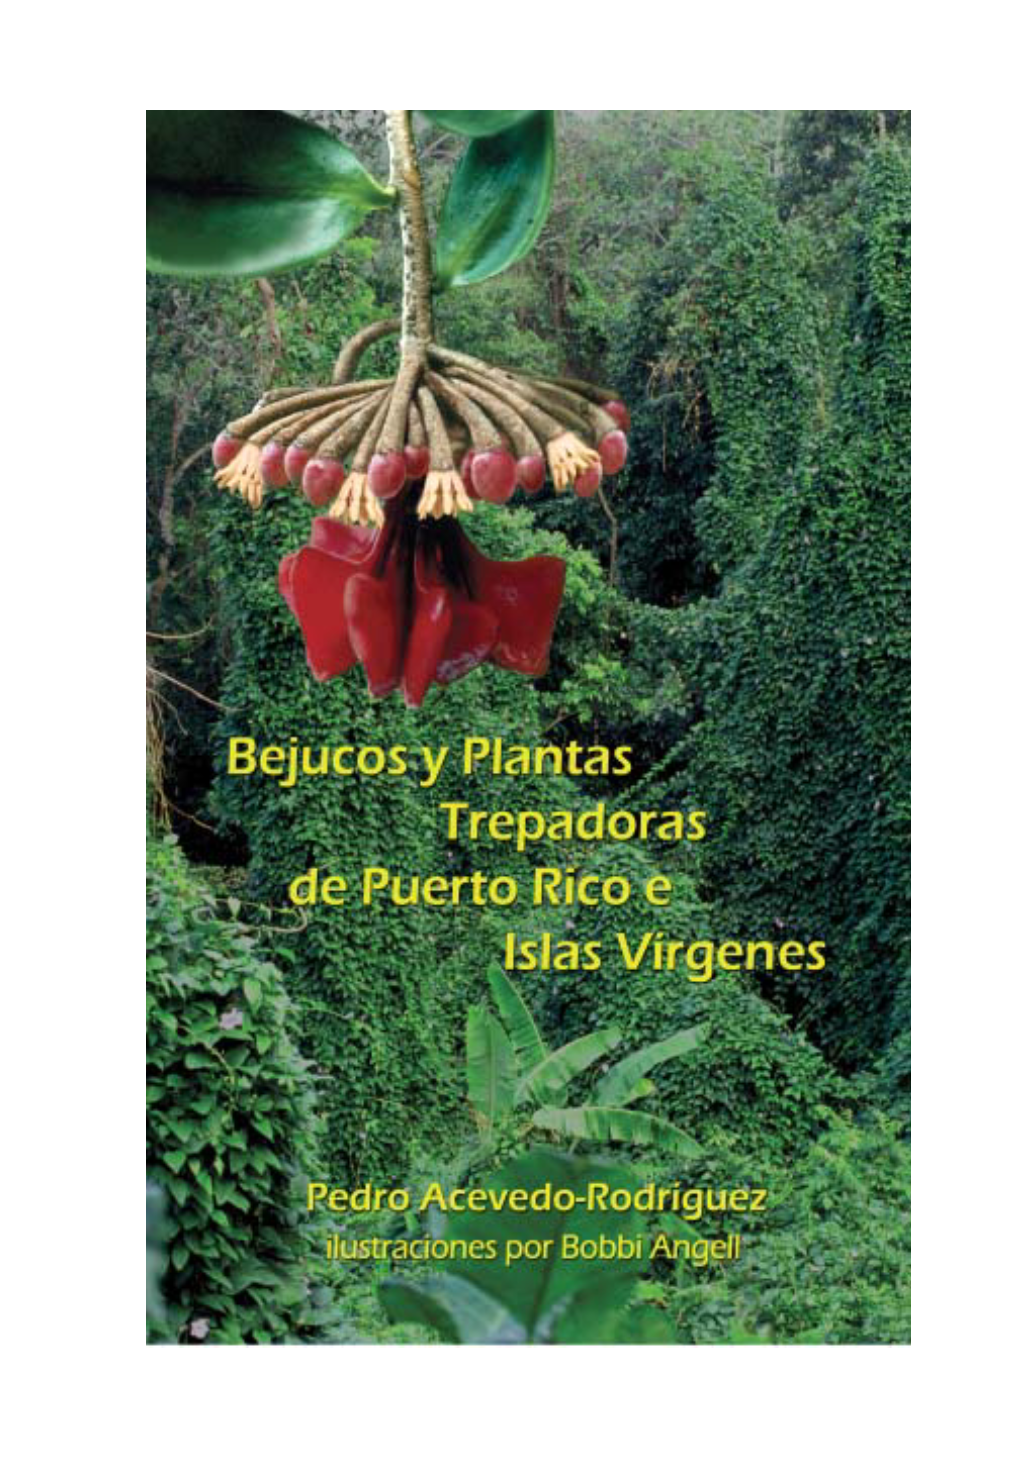 Bejucos Y Plantas Trepadoras De Puerto Rico E Islas Vírgenes/ Pedro Acevedo-Rodríguez; Illustrated by Bobbi Angell